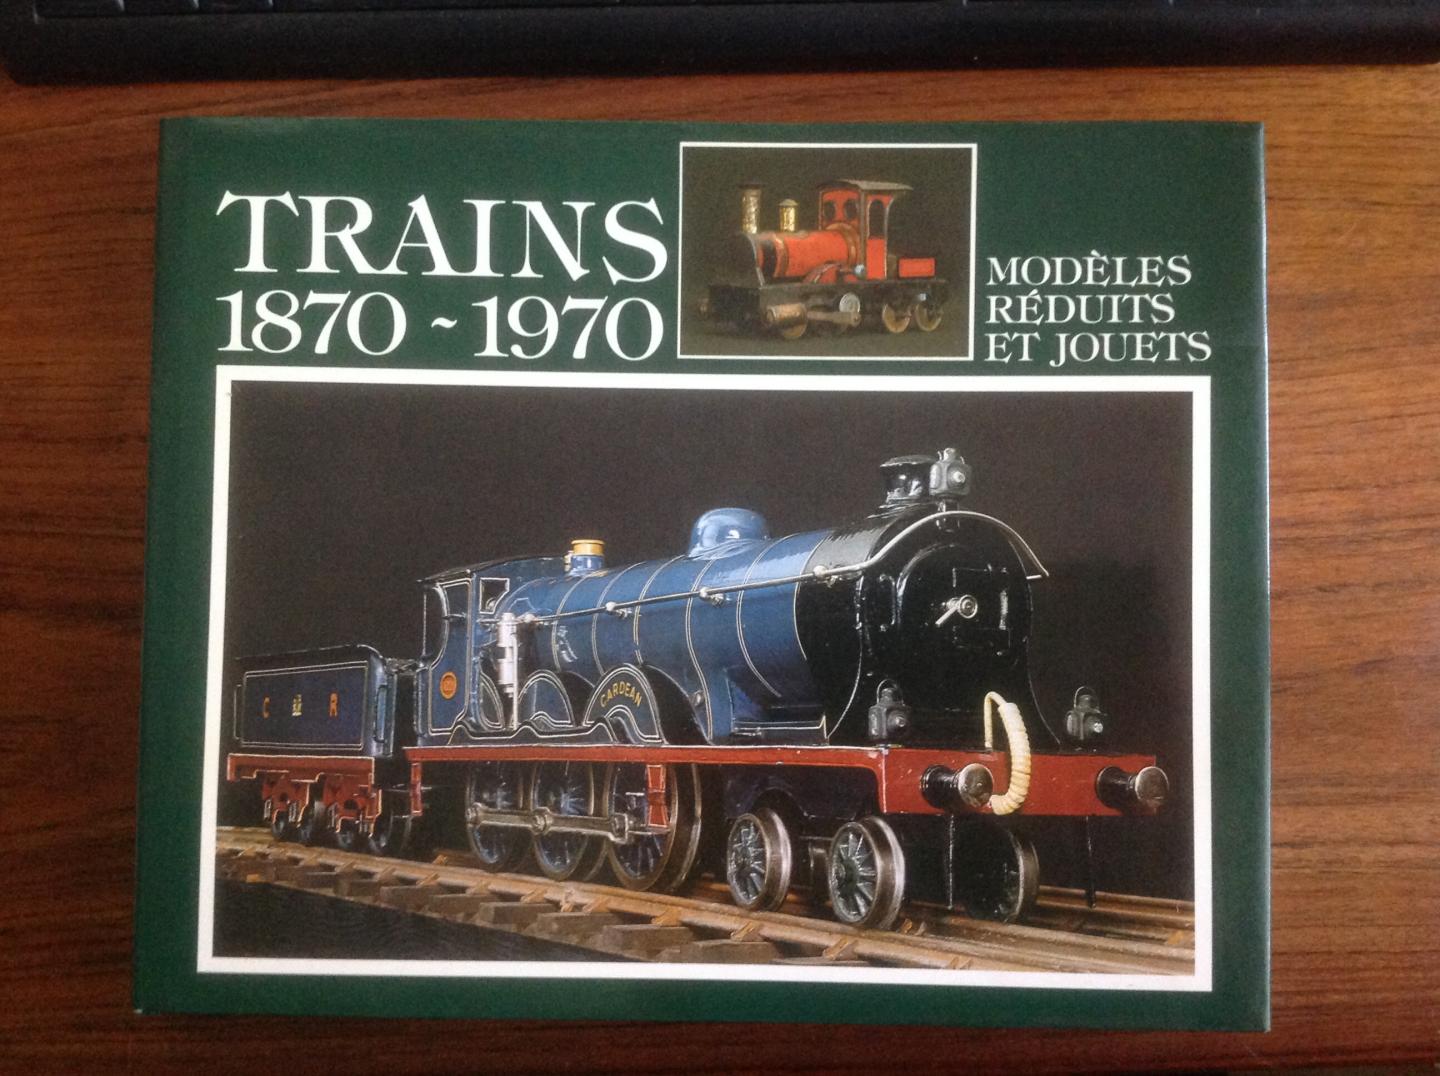 Levy Allen - Trains 1870-1970 (Modeles reduits et jouets)